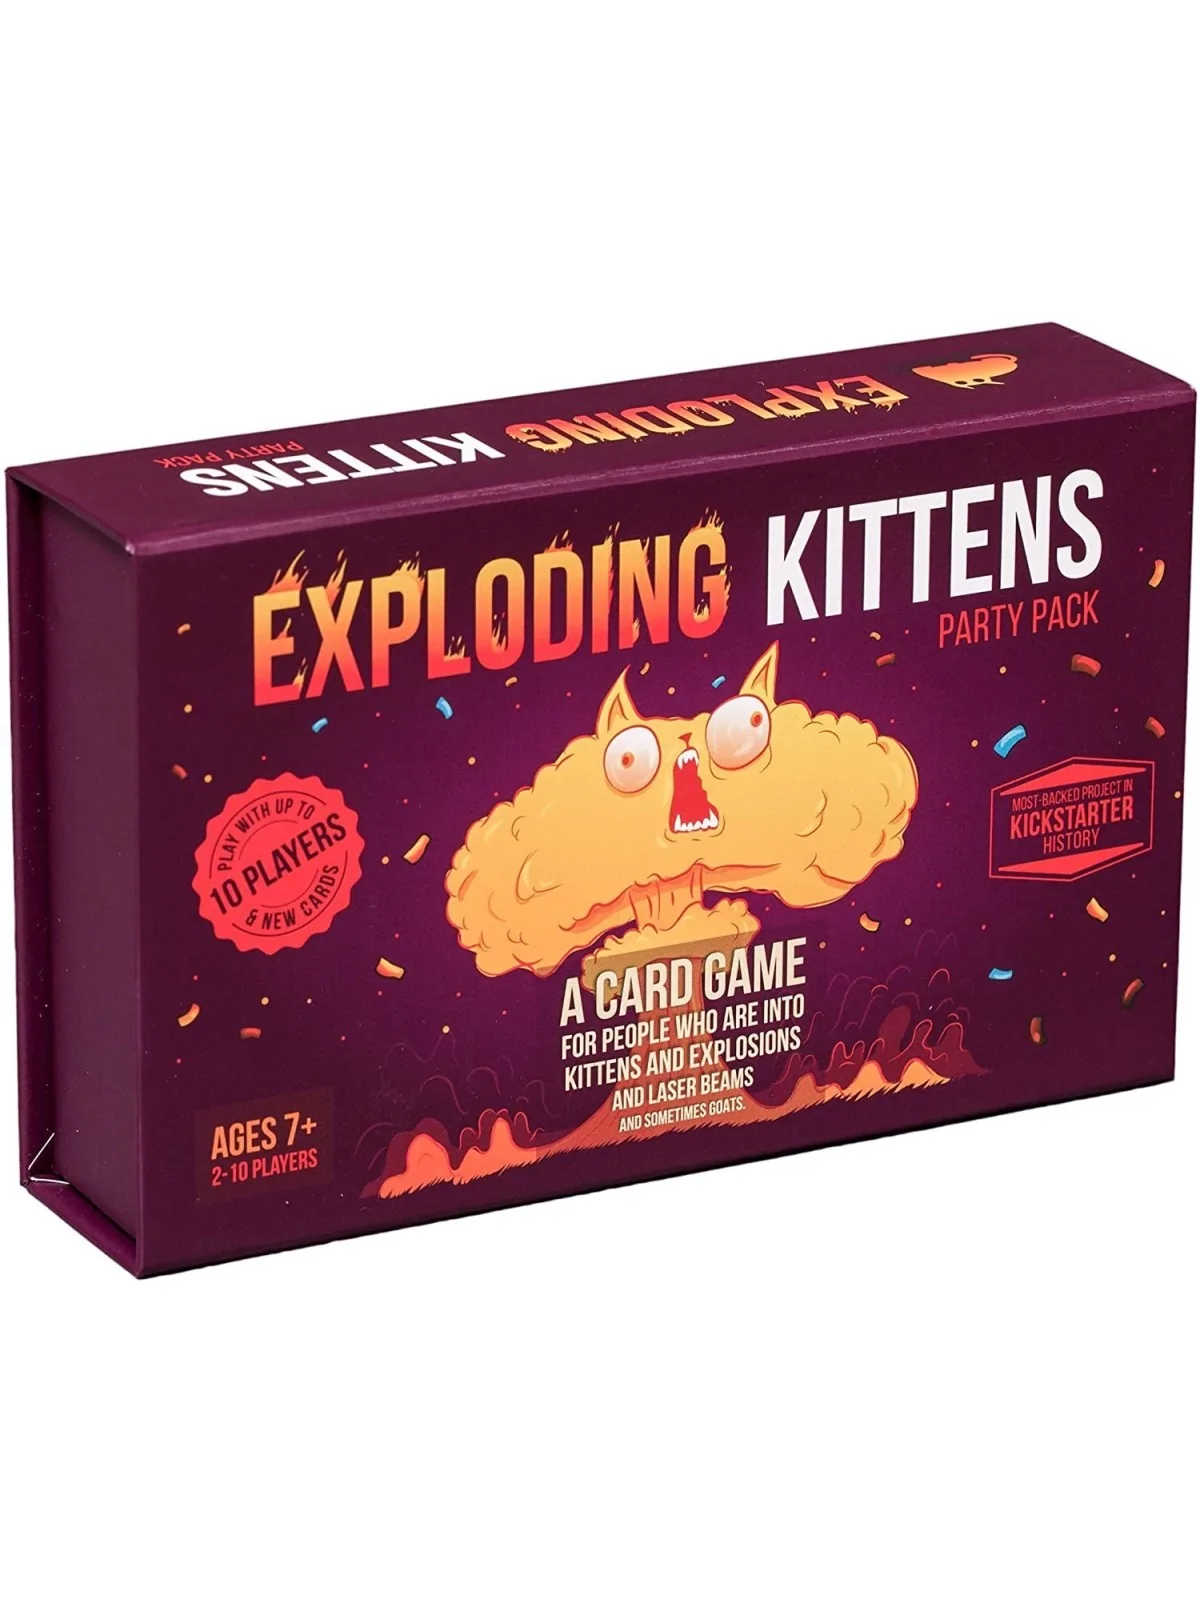 Comprar Exploding Kittens Party Pack barato al mejor precio 29,99 € de